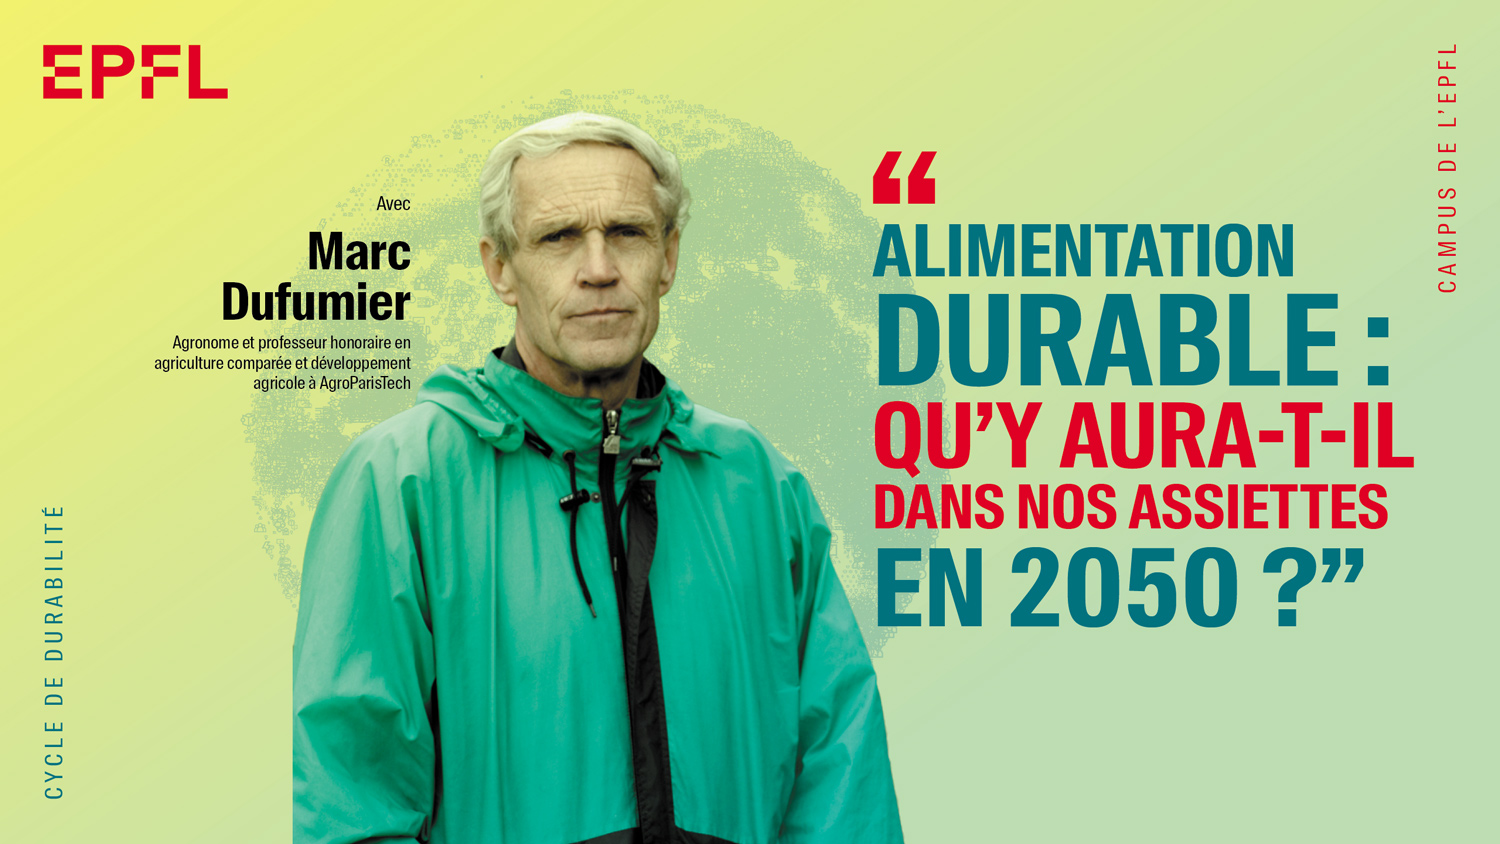 Cycle de durabilité avec Marc Dufumier